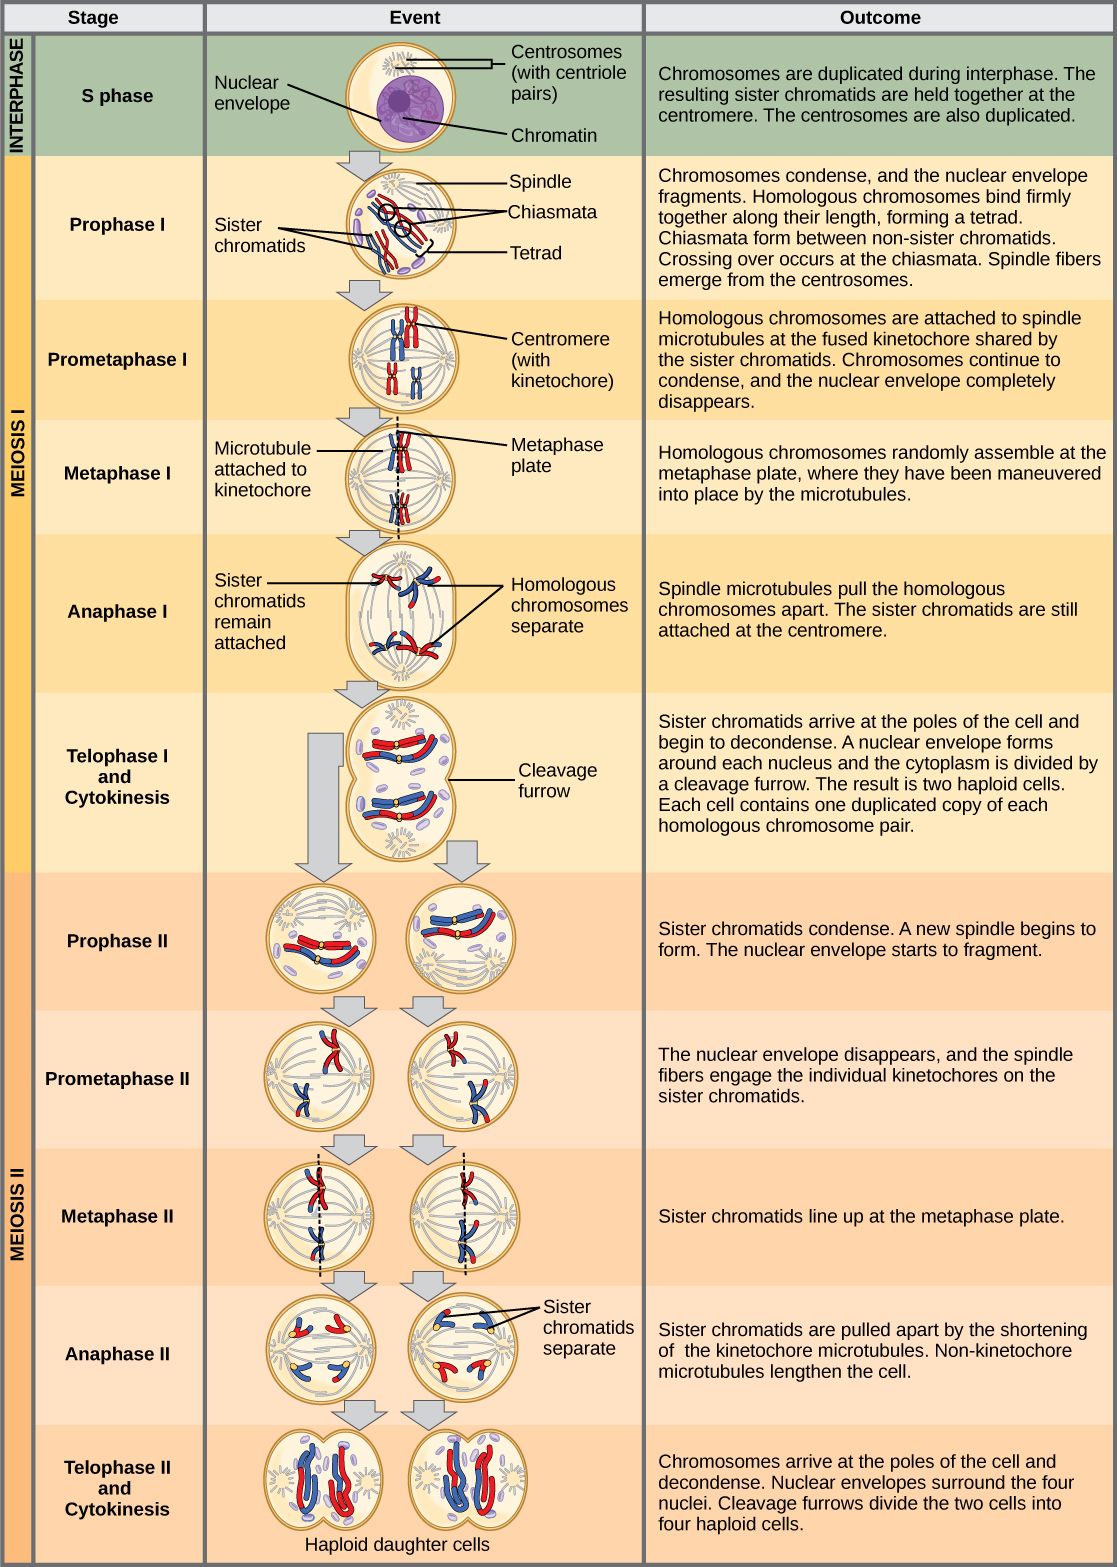 Cette illustration décrit les étapes de la méiose. En interphase, avant le début de la méiose, les chromosomes sont dupliqués. La méiose I passe ensuite par plusieurs étapes. Dans la prophase I, les chromosomes commencent à se condenser et l'enveloppe nucléaire se fragmente. Des paires homologues de chromosomes s'alignent et des chiasmas se forment entre elles. Le croisement a lieu au niveau des chiasmas. Les fibres fusiformes émergent des centrosomes. Dans la prométaphase I, les chromosomes homologues se fixent aux microtubules fusiformes. Dans la métaphase I, les chromosomes homologues s'alignent sur la plaque de métaphase. Dans l'anaphase I, les microtubules fusiformes séparent les paires homologues de chromosomes. Lors de la télophase I et de la cytokinèse, les chromatides sœurs arrivent aux pôles de la cellule et commencent à se décondenser. L'enveloppe nucléaire recommence à se former et la division cellulaire se produit. La méiose II passe ensuite par plusieurs étapes. Dans la prophase II, les chromatides sœurs se condensent et l'enveloppe nucléaire se fragmente. Une nouvelle broche commence à se former. Au cours de la prométaphase II, les chromatides sœurs se fixent au kinétochore. Dans la métaphase II, les chromatides sœurs s'alignent sur la plaque de métaphase. Dans l'anaphase II, les chromatides sœurs sont séparées par les fuseaux de raccourcissement. Lors de la télophase II et de la cytokinèse, l'enveloppe nucléaire se forme à nouveau et la division cellulaire se produit, donnant naissance à quatre cellules filles haploïdes.